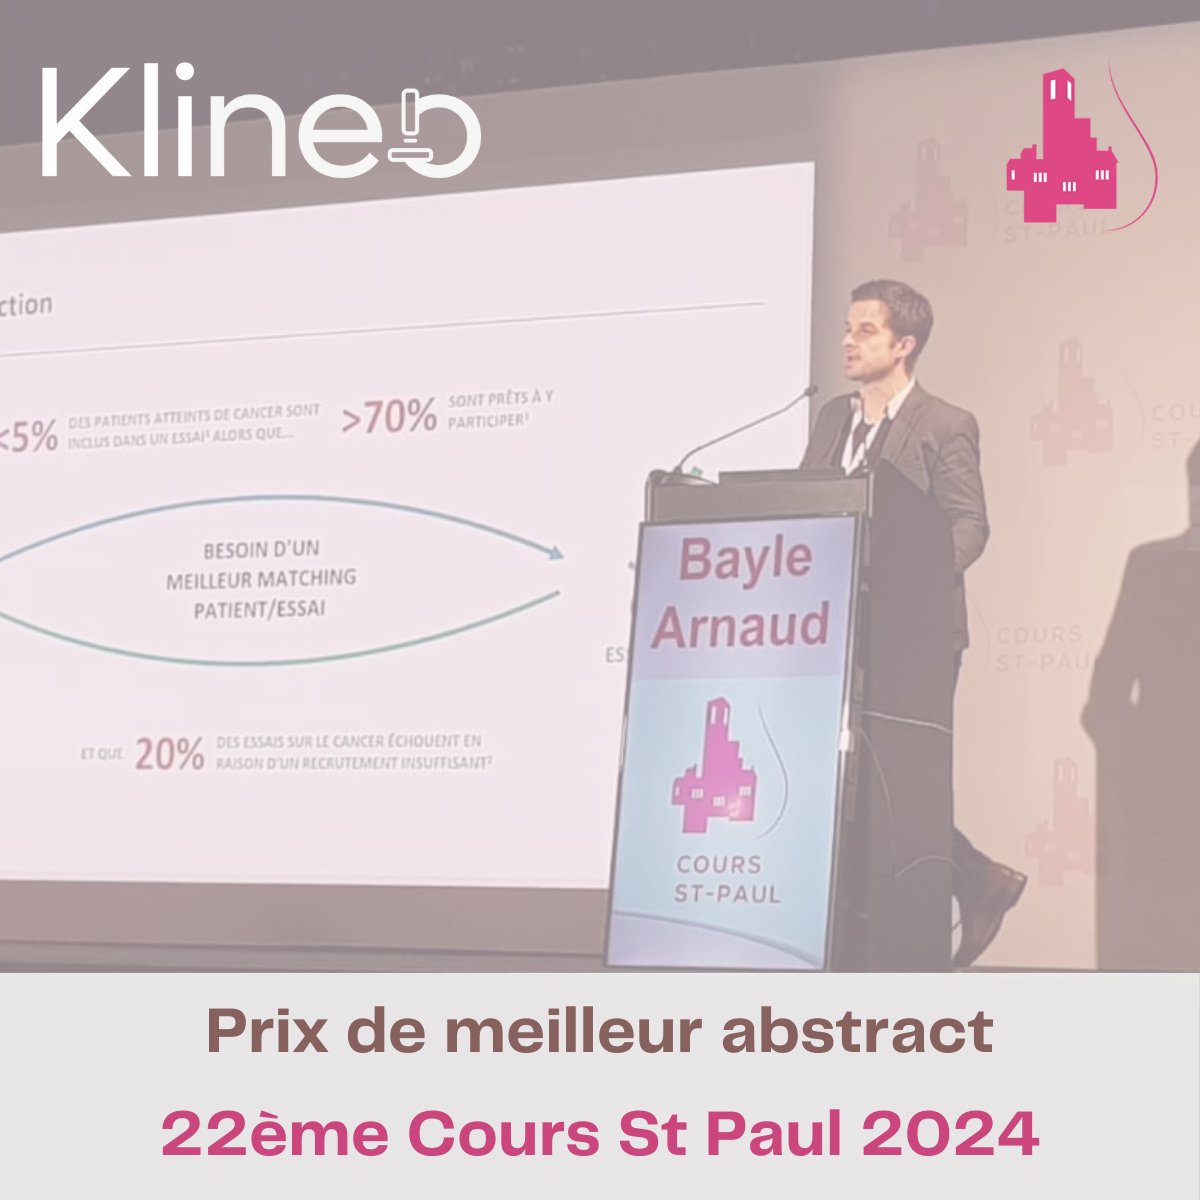 22ème Cours St-Paul Sein 2024 - 🏆Prix du meilleur abstract🏆

🙌Nous sommes très fiers d’avoir gagné le prix du meilleur abstract dans le cadre de notre plateforme permettant d’accéder aux #essaiscliniques dans les #cancers du sein triple négatif.

🔗app.klineo.fr